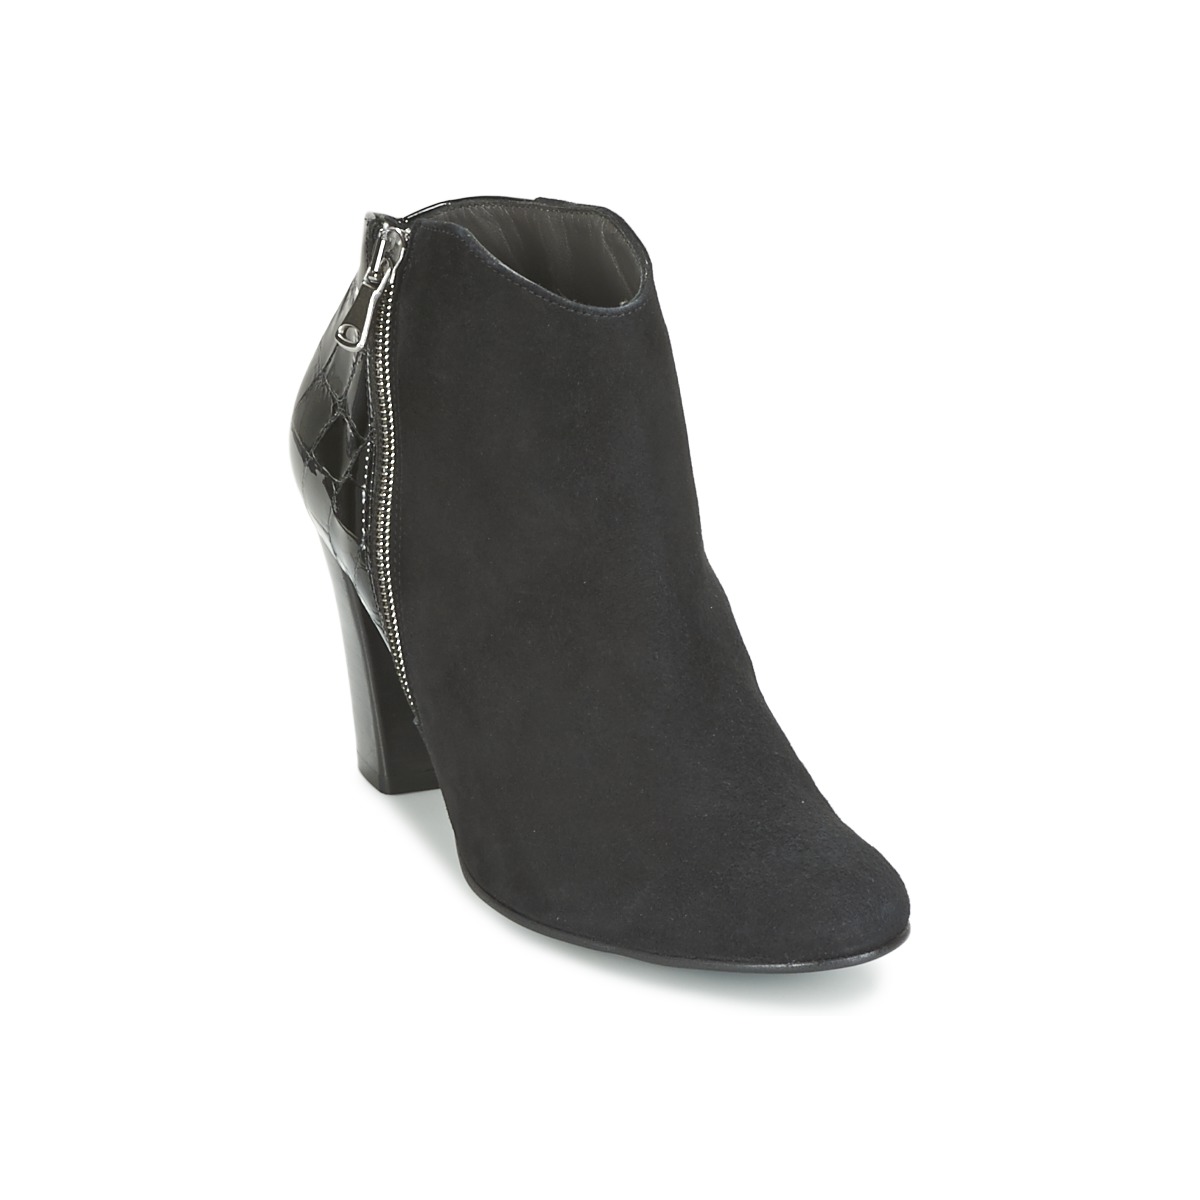 Schoenen Dames Low boots France Mode NANTES Zwart / Lak